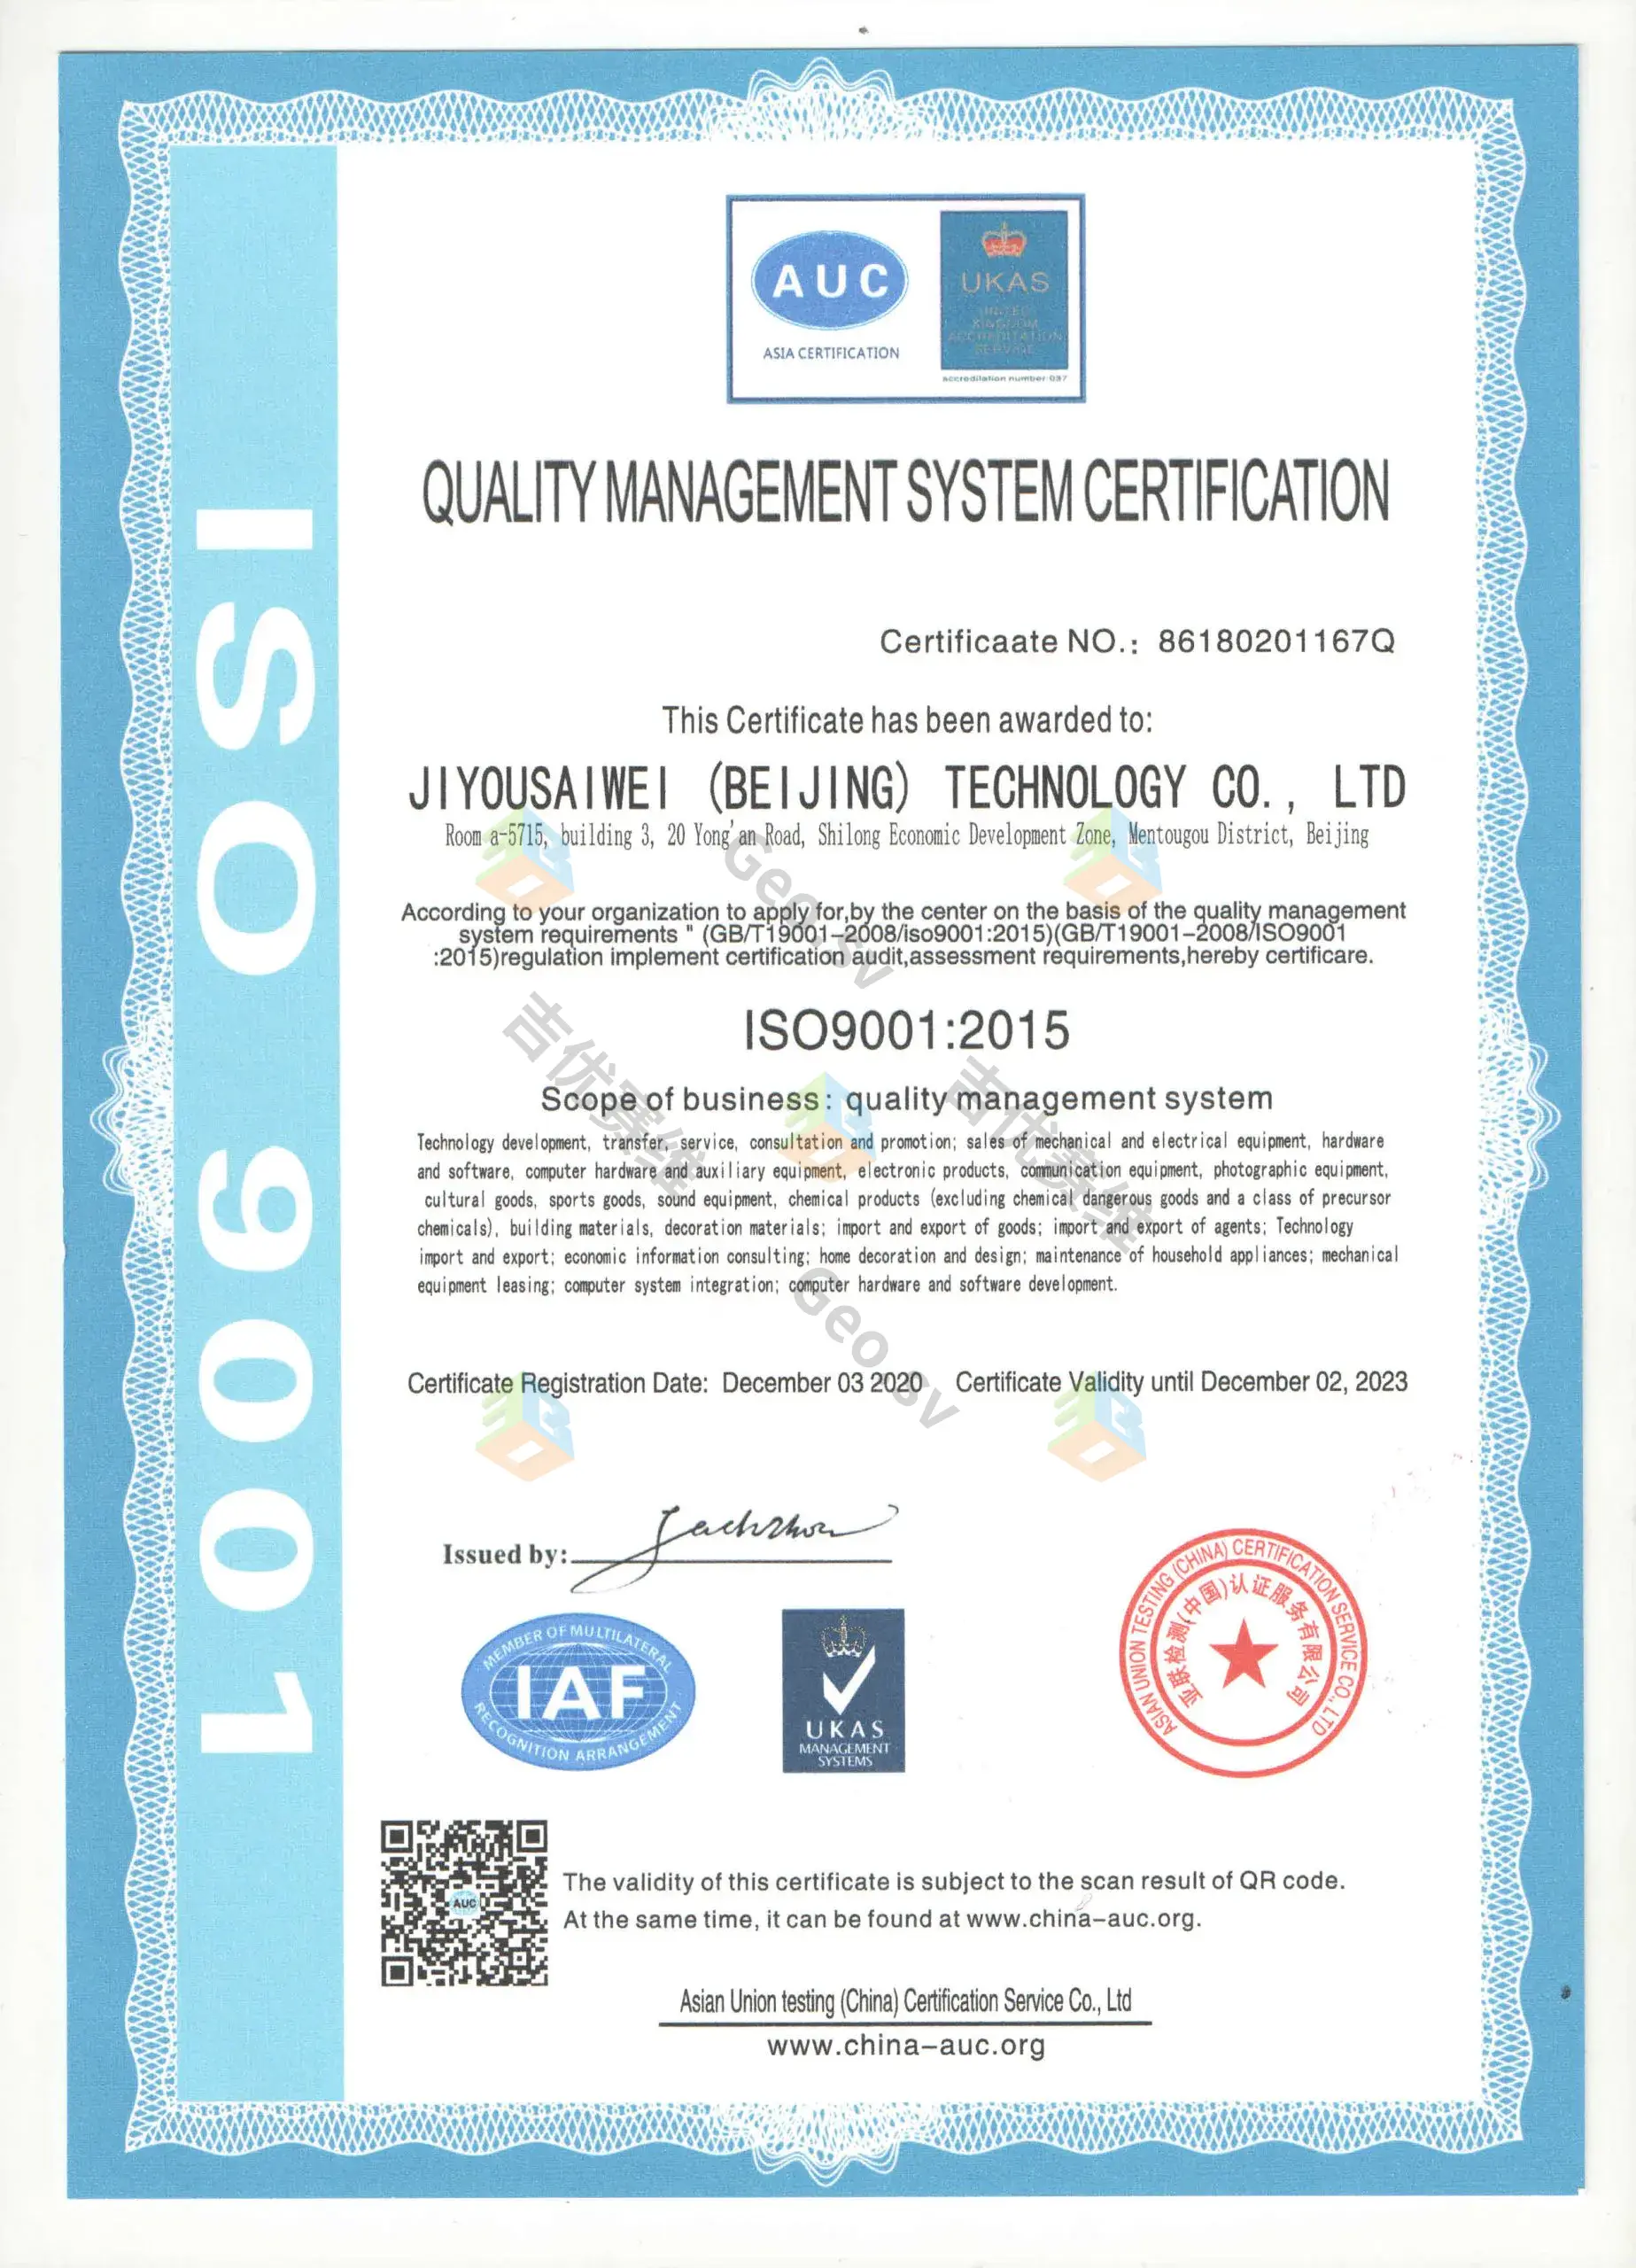 喜訊!熱烈祝賀我公司獲得質量管理體系認證證書ISO9001